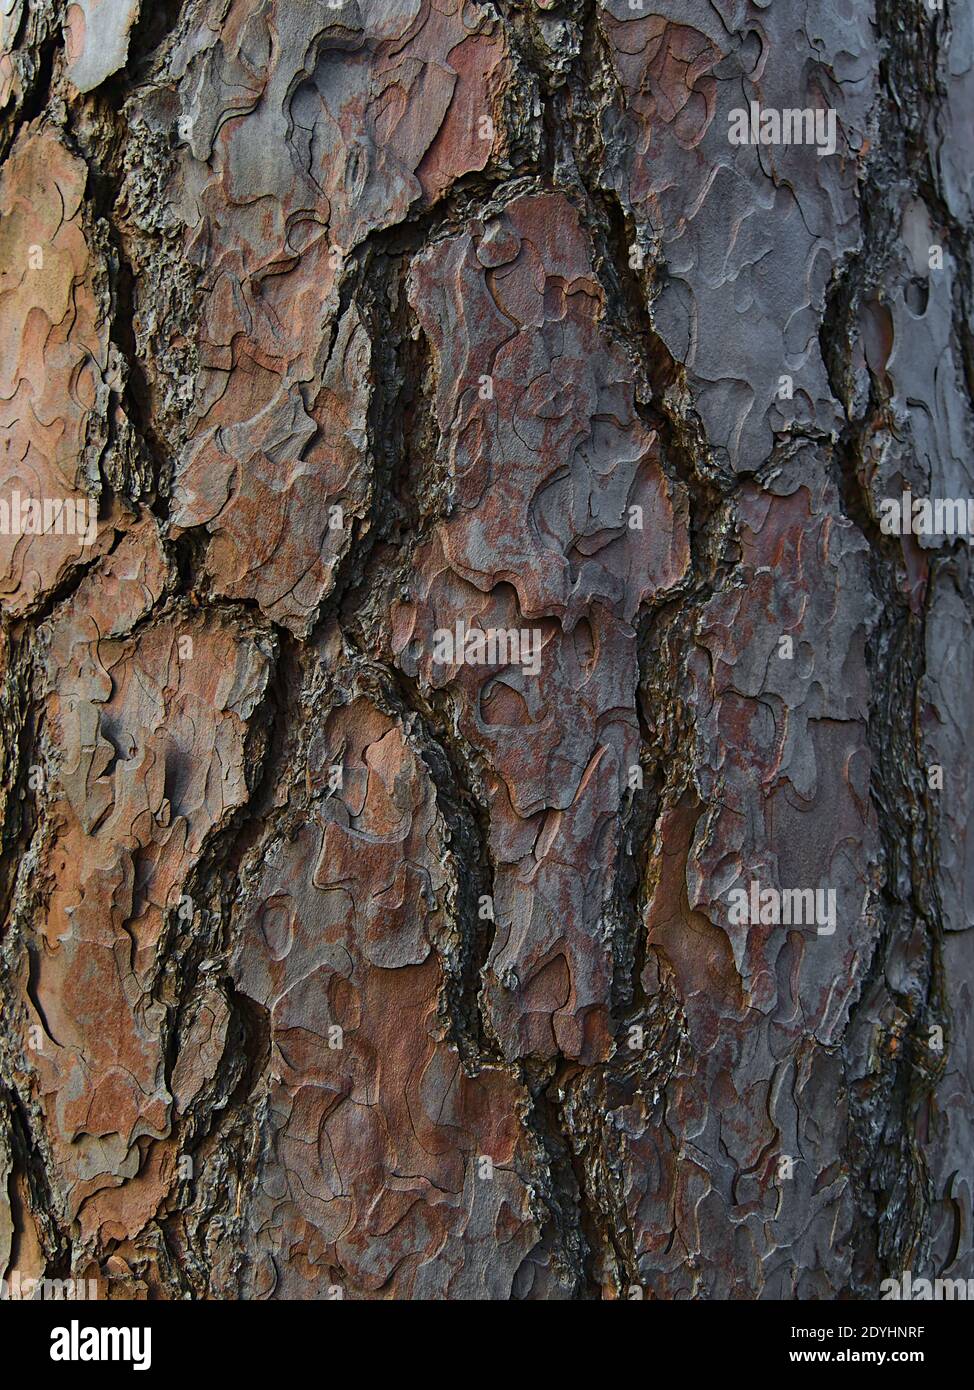 Vista closeup della spessa corteccia modellata e spaccata del tronco di un vecchio pino in una foresta di Stoccarda, Germania. Foto Stock